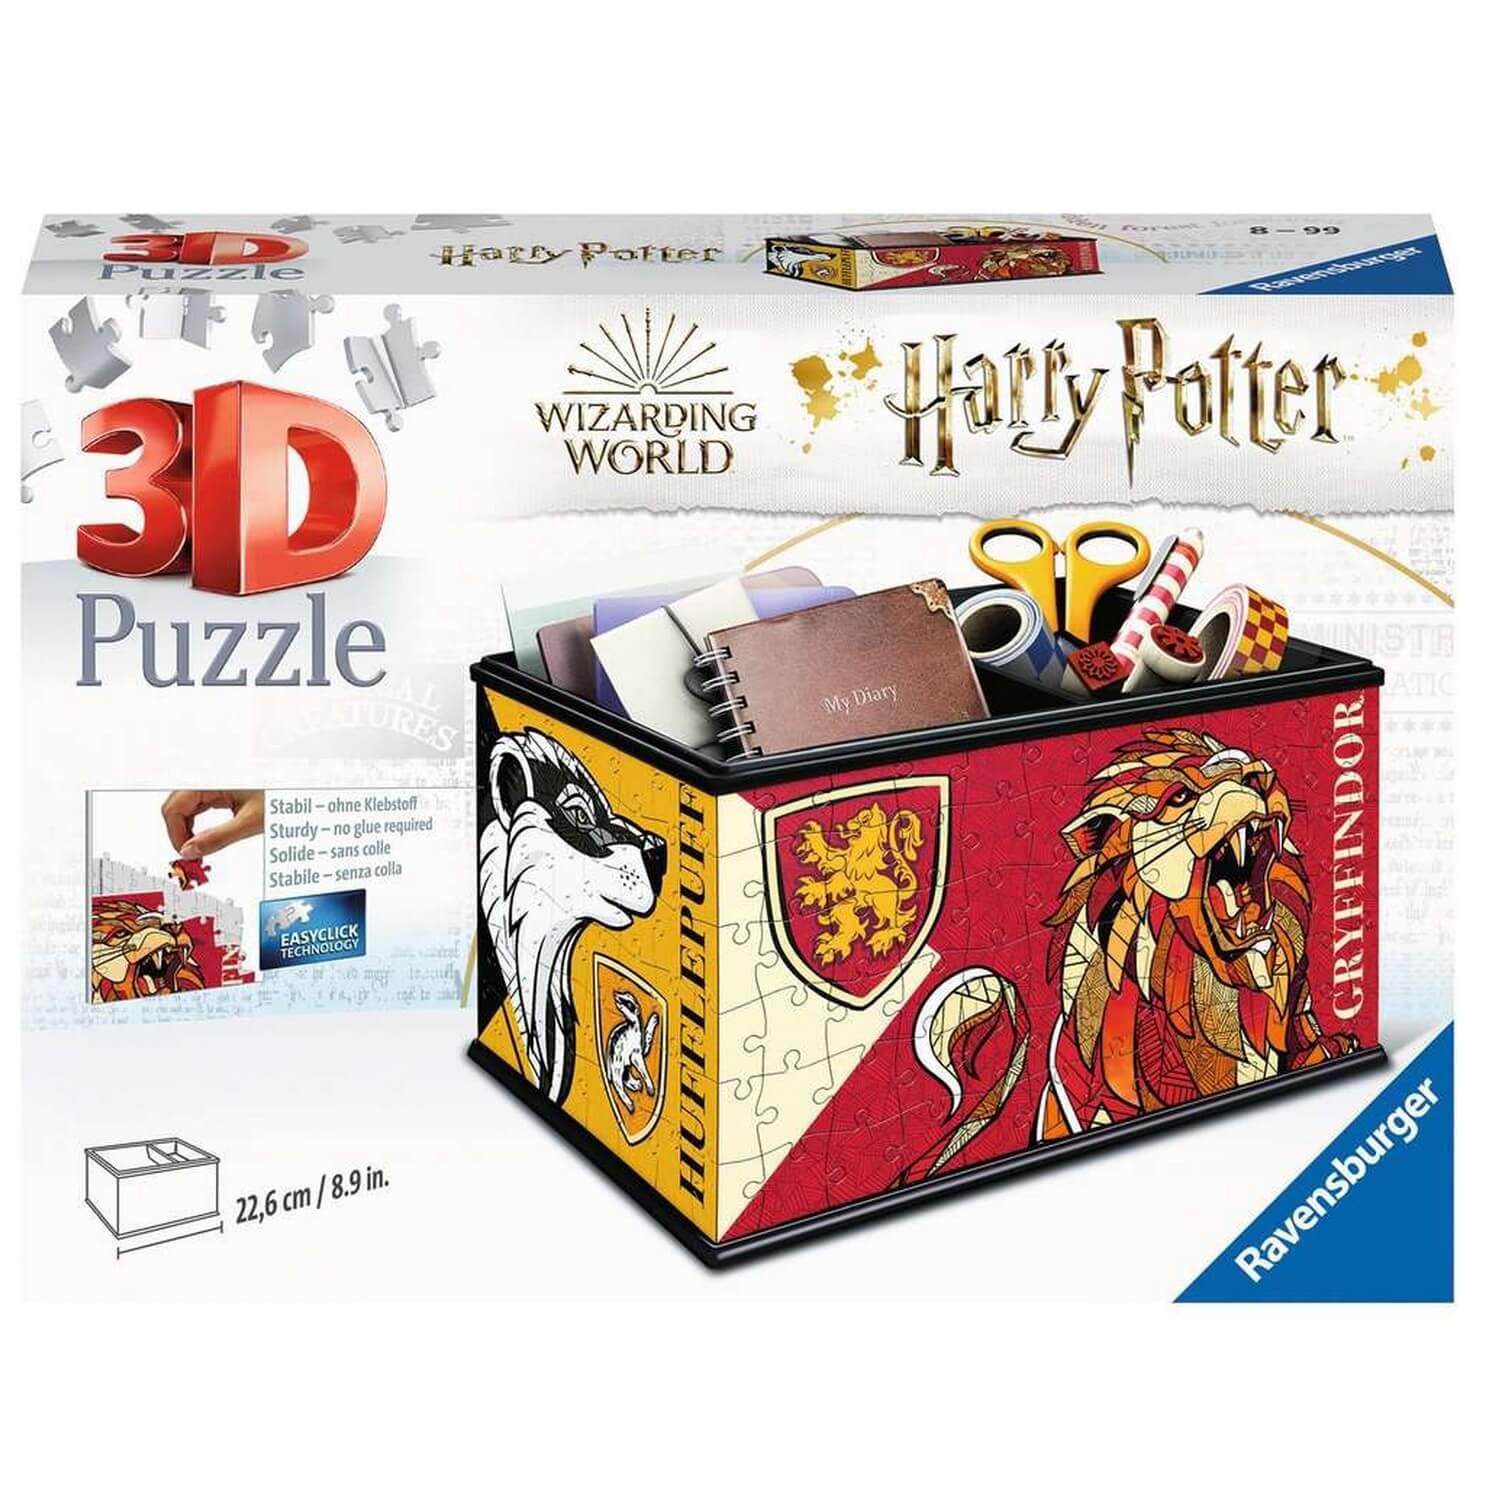 Puzzle 3D : Boite de rangement Harry Potter - Ravensburger - Rue des Puzzles